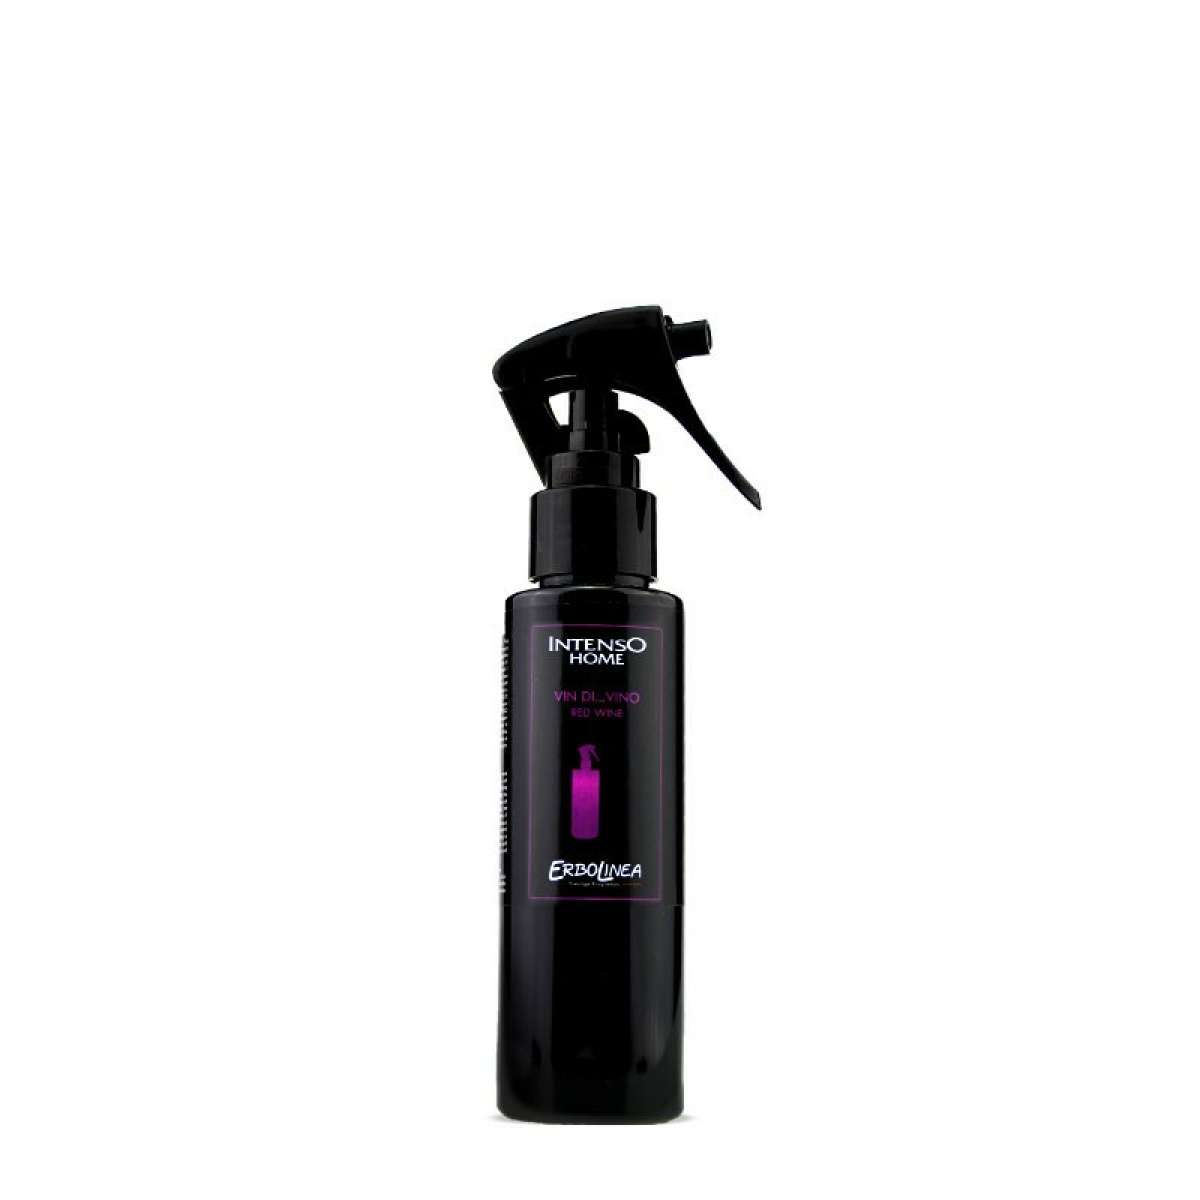 Immagine del prodotto Home Spray per Ambiente Vin...Divino 100 ml | Erbolinea Prestige